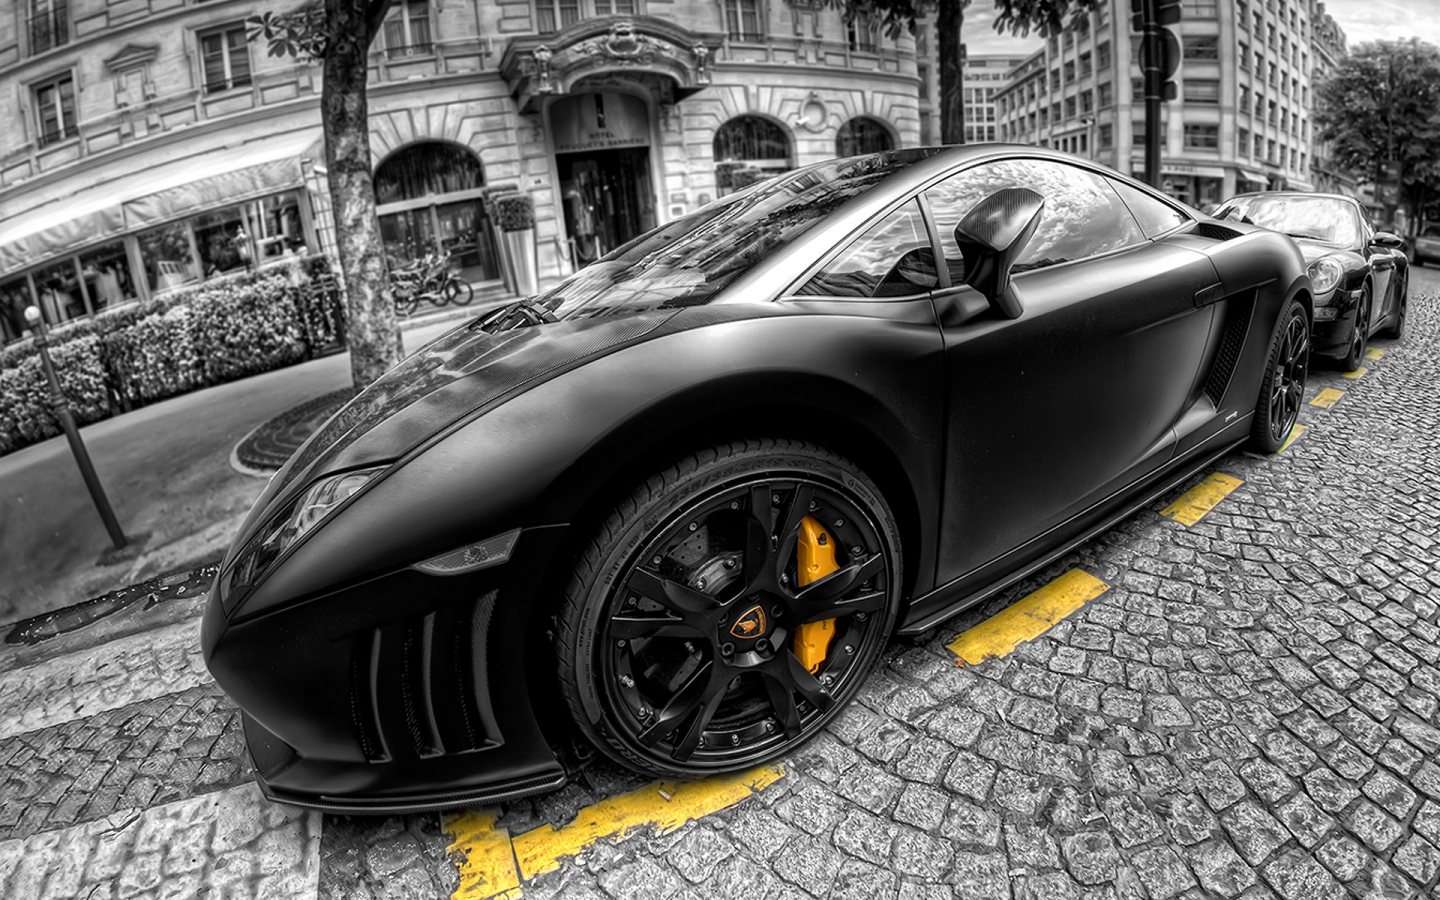 Lamborghini Gallardo Black for 1440 x 900 widescreen resolution